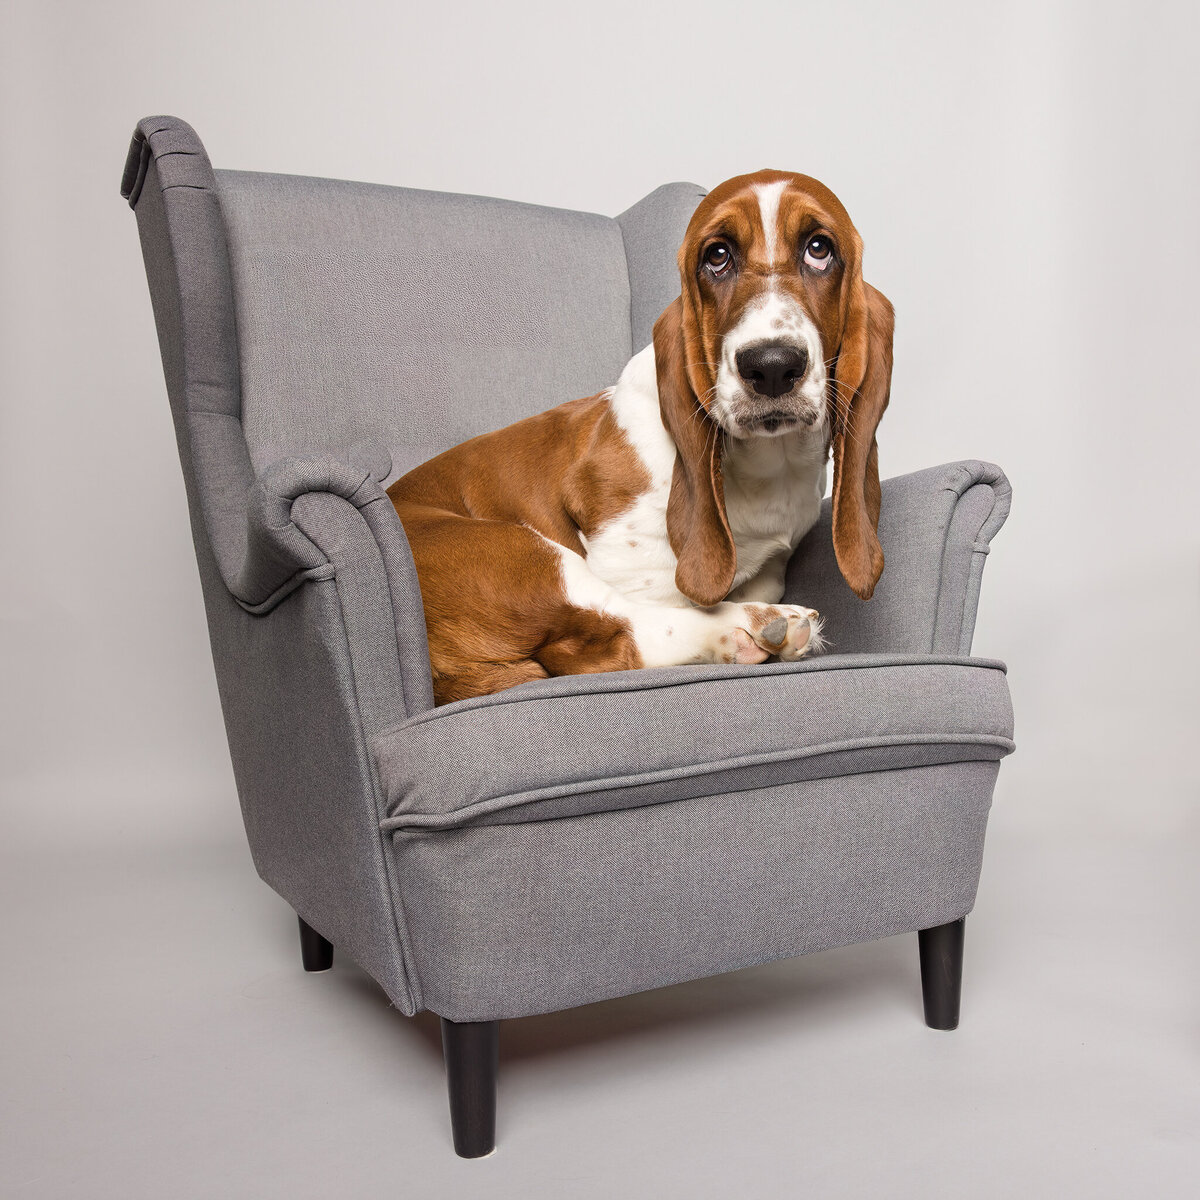 basset hound in a chair